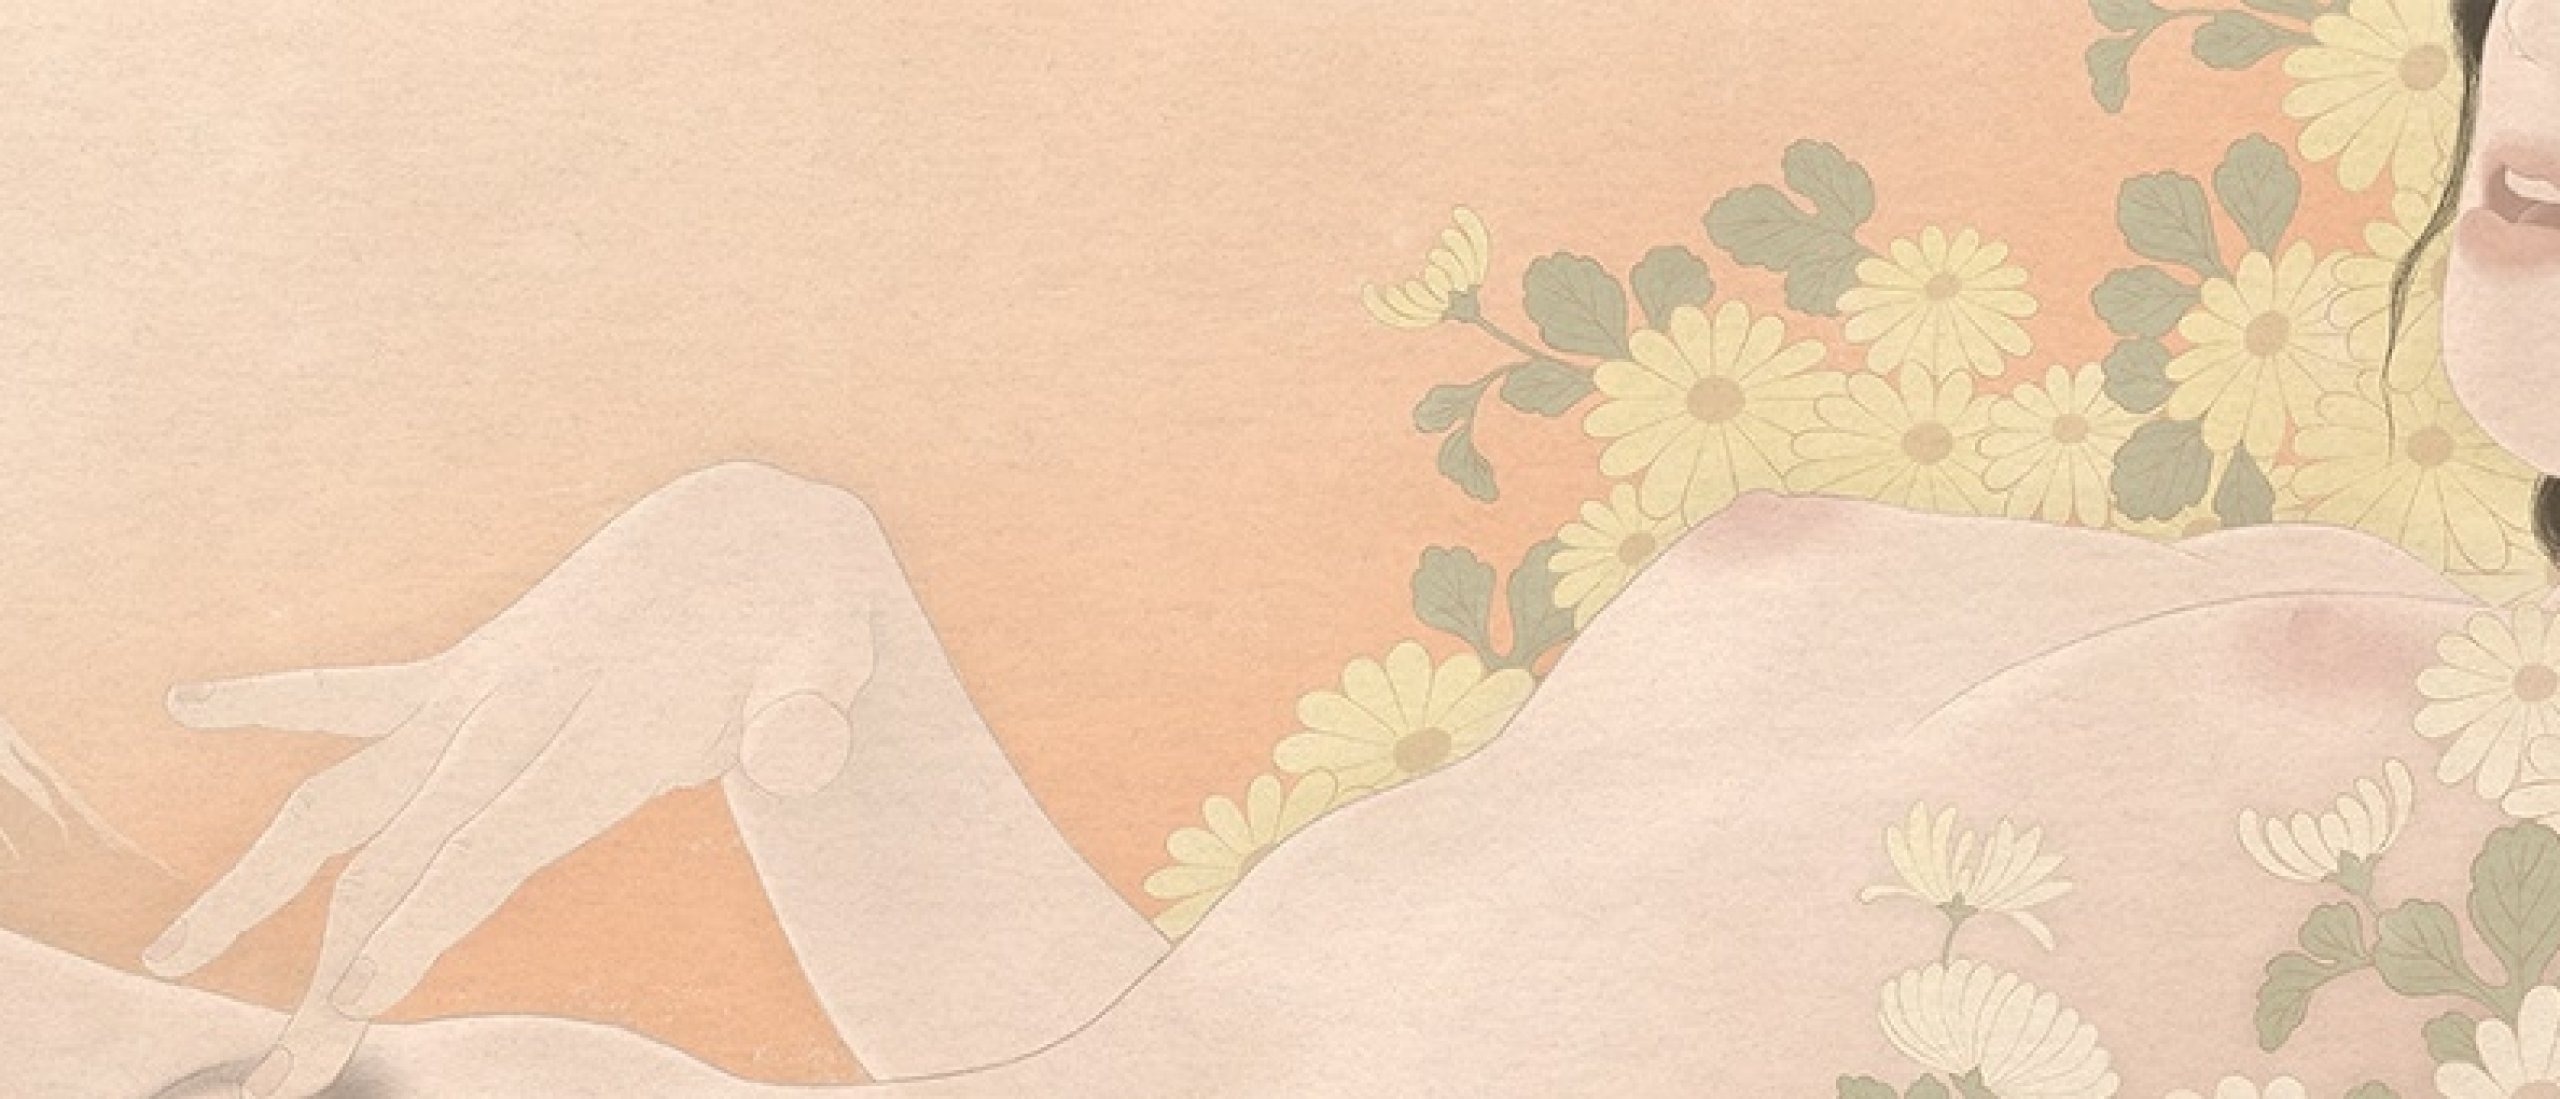 Senju Shunga's Erotic Ode to Hokusai's Fuji Series